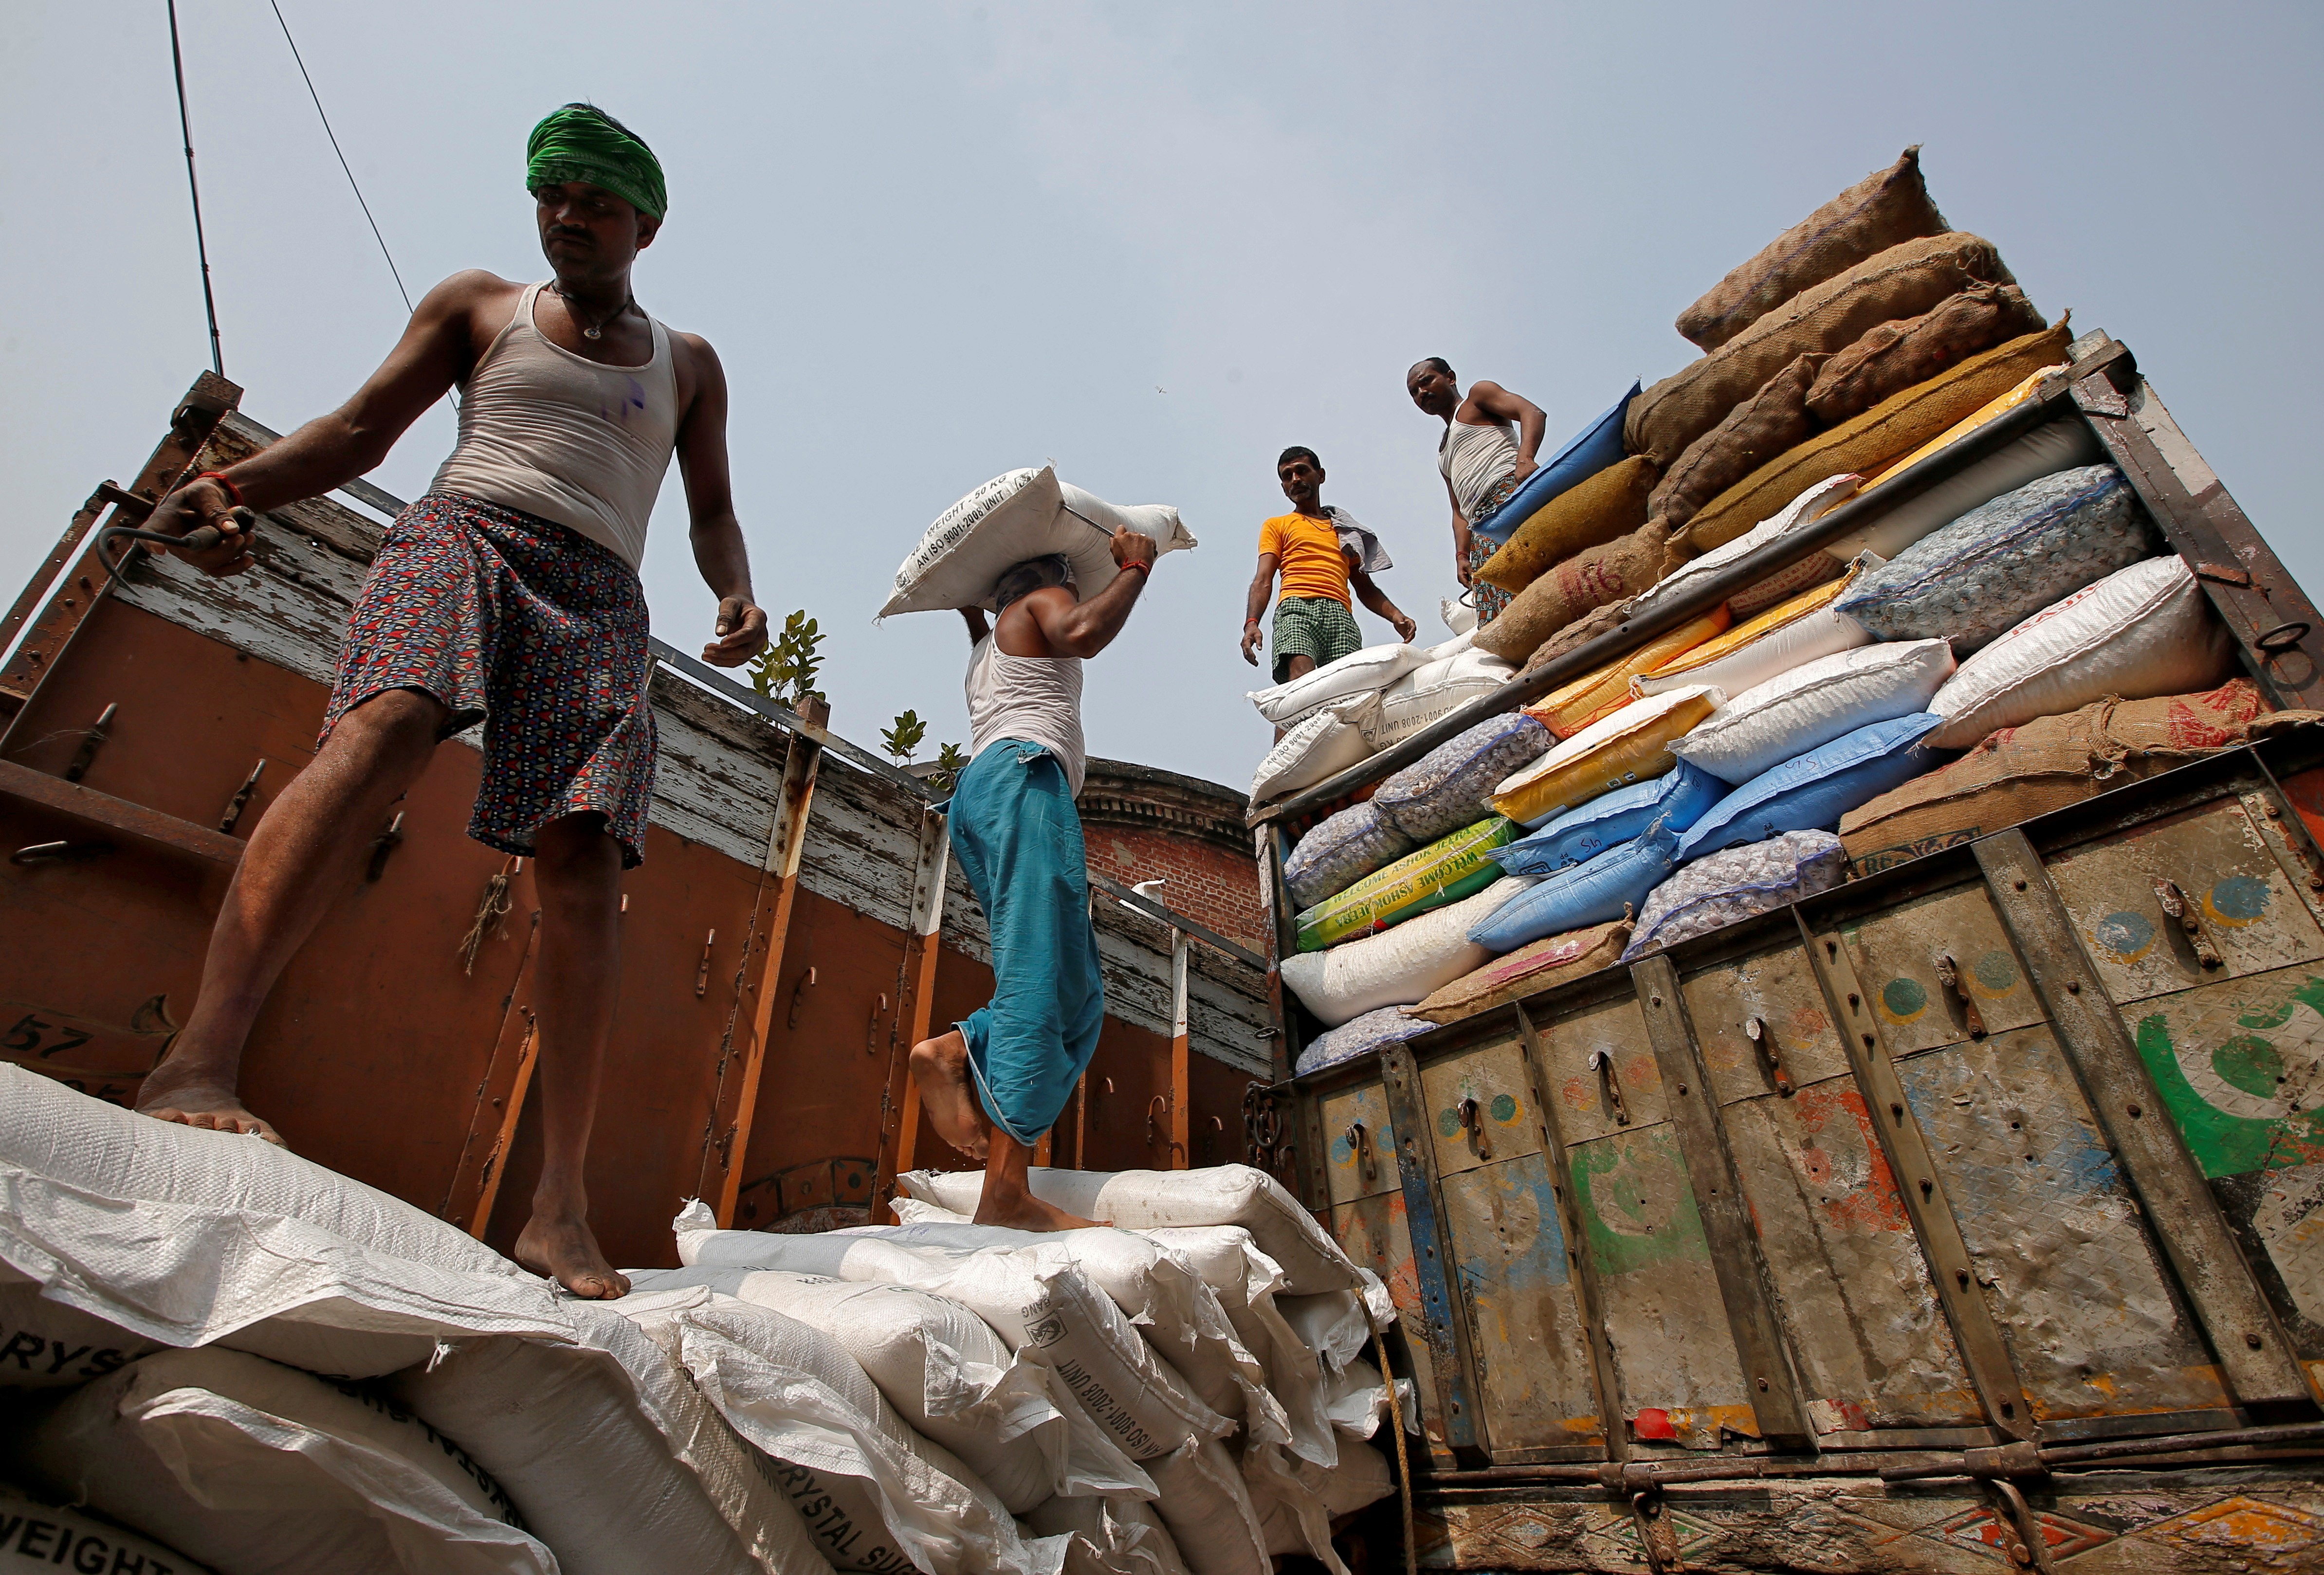 Trabalhadores carregam sacos de açúcar em mercado na Índia  (Foto: REUTERS/Rupak De Chowdhuri)